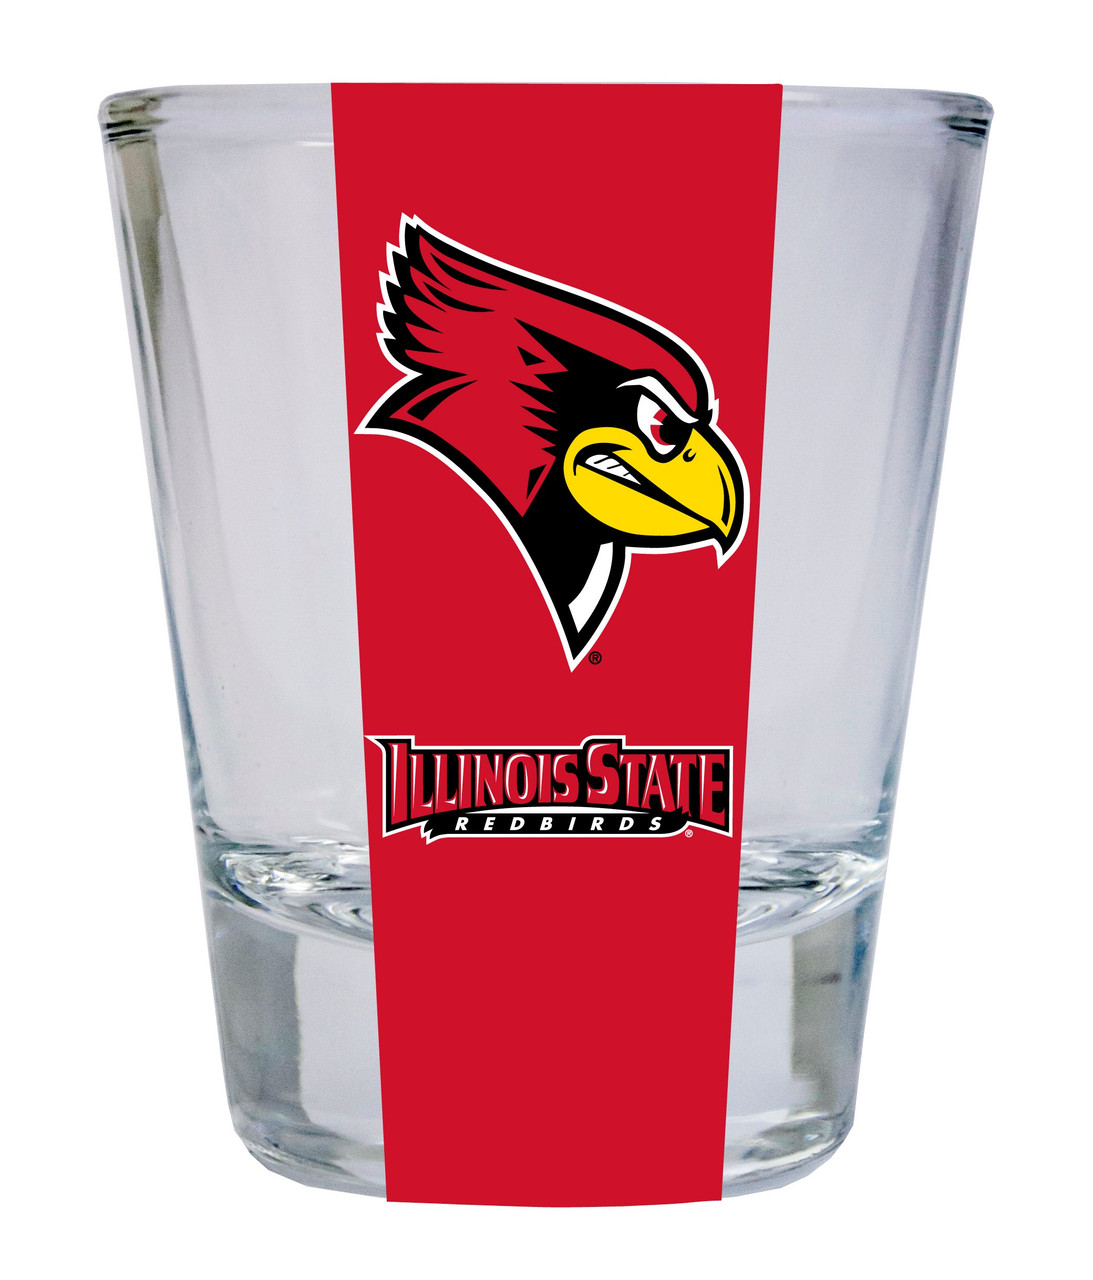 Illinois State Redbirds Round Shot Glass